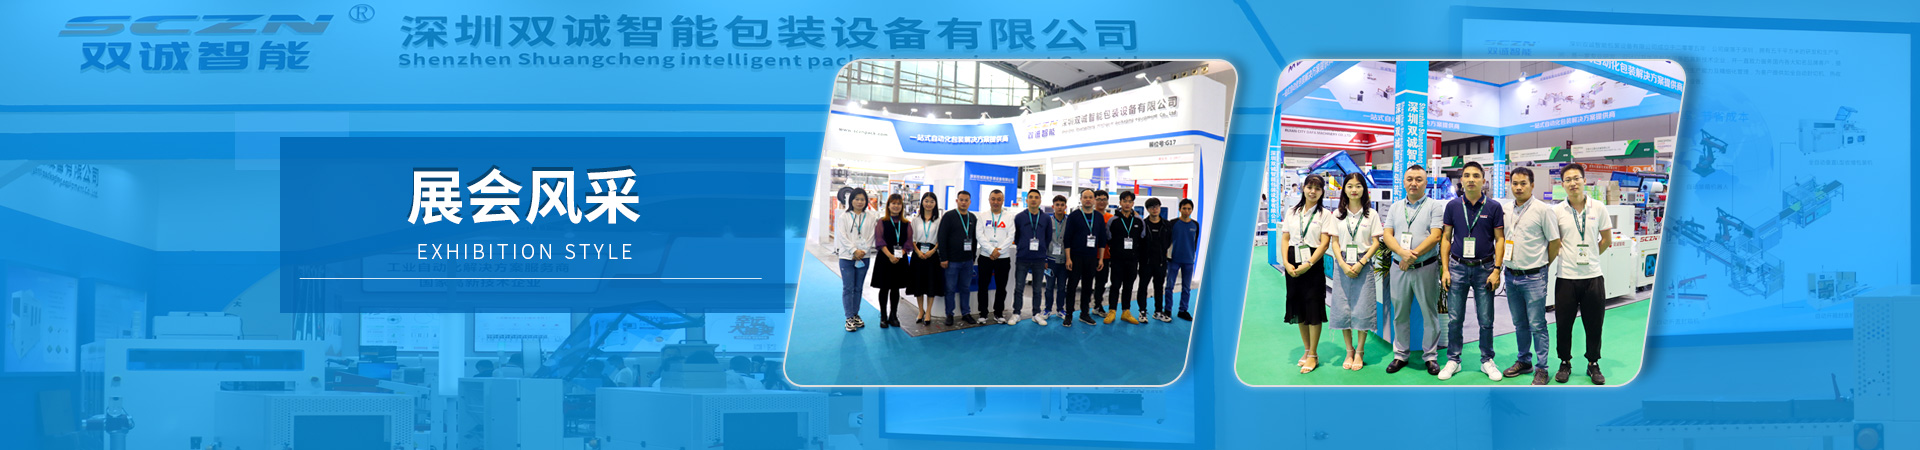 深圳智能裝備博覽會